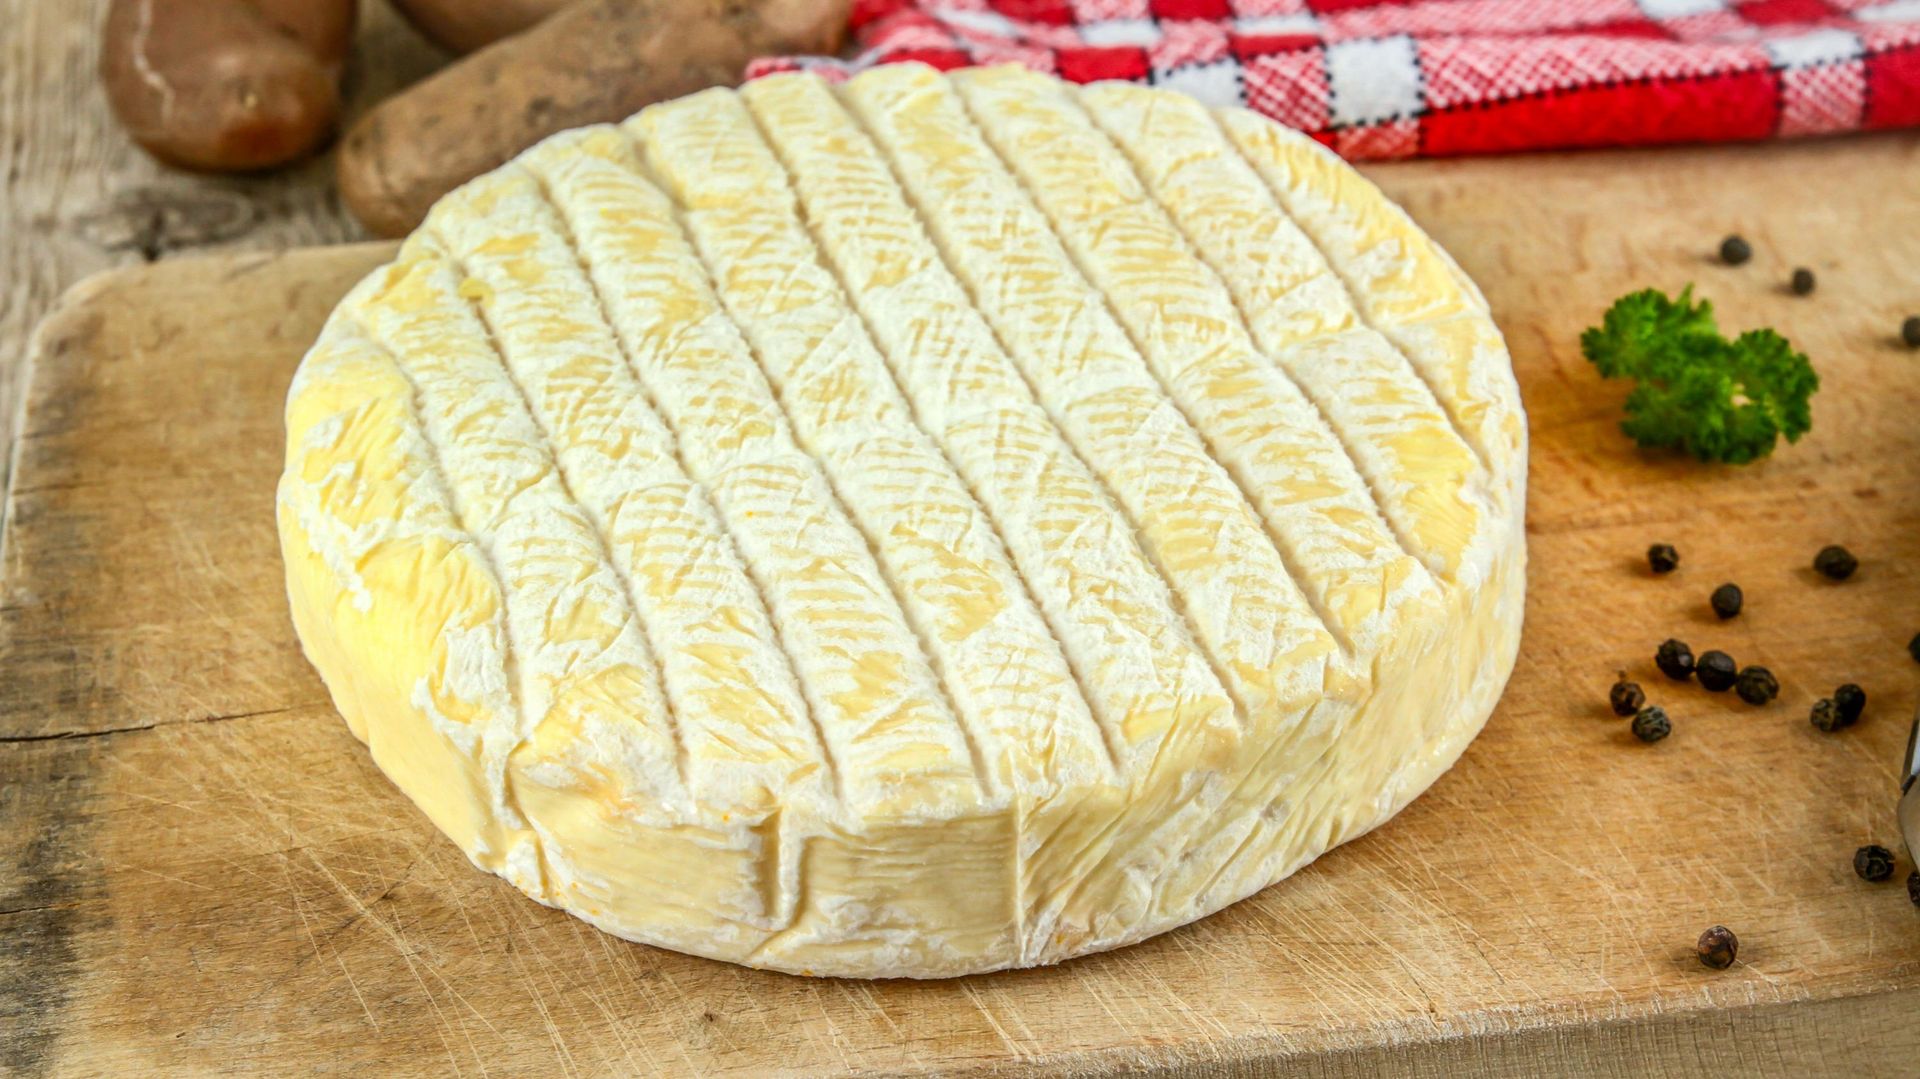 Reblochon, Beaufort, Abondance, connaissez-vous l'origine de ces fromages des Alpes?